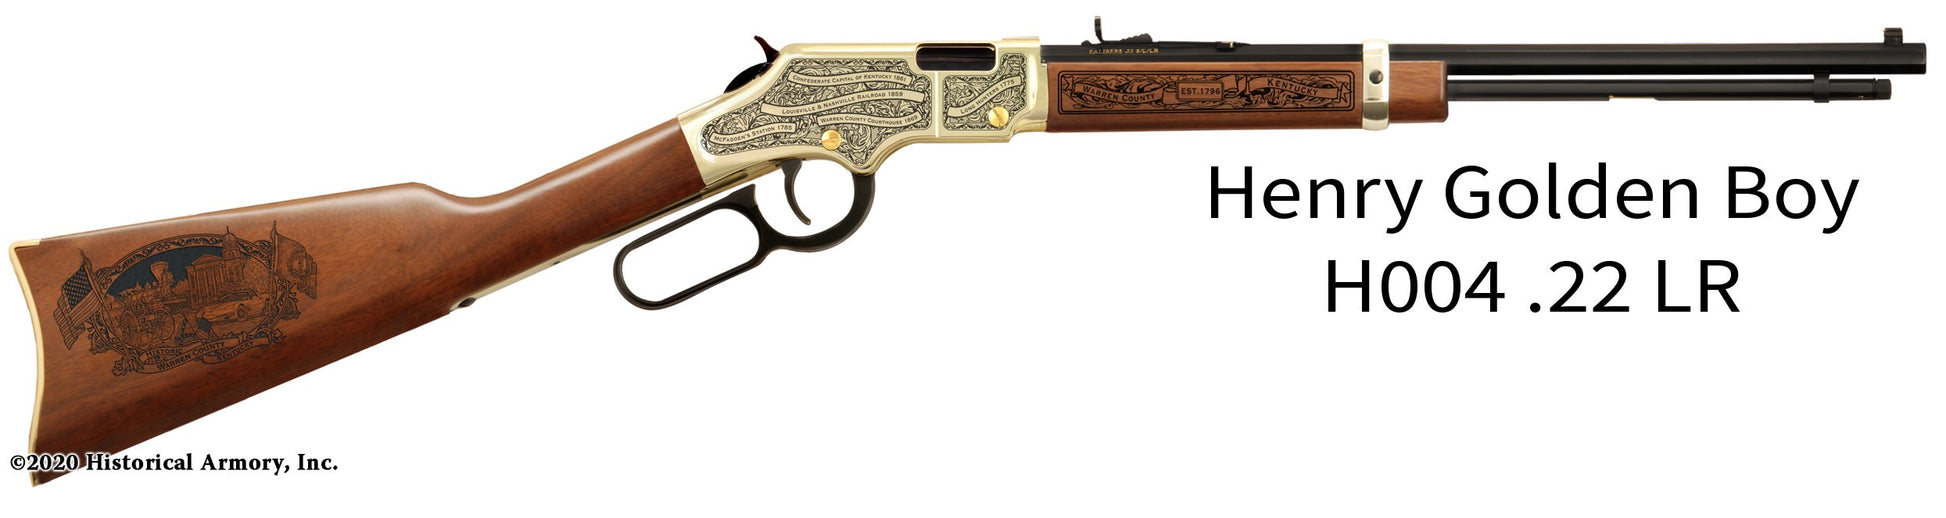 Warren County Kentucky Engraved Henry Golden Boy Rifle